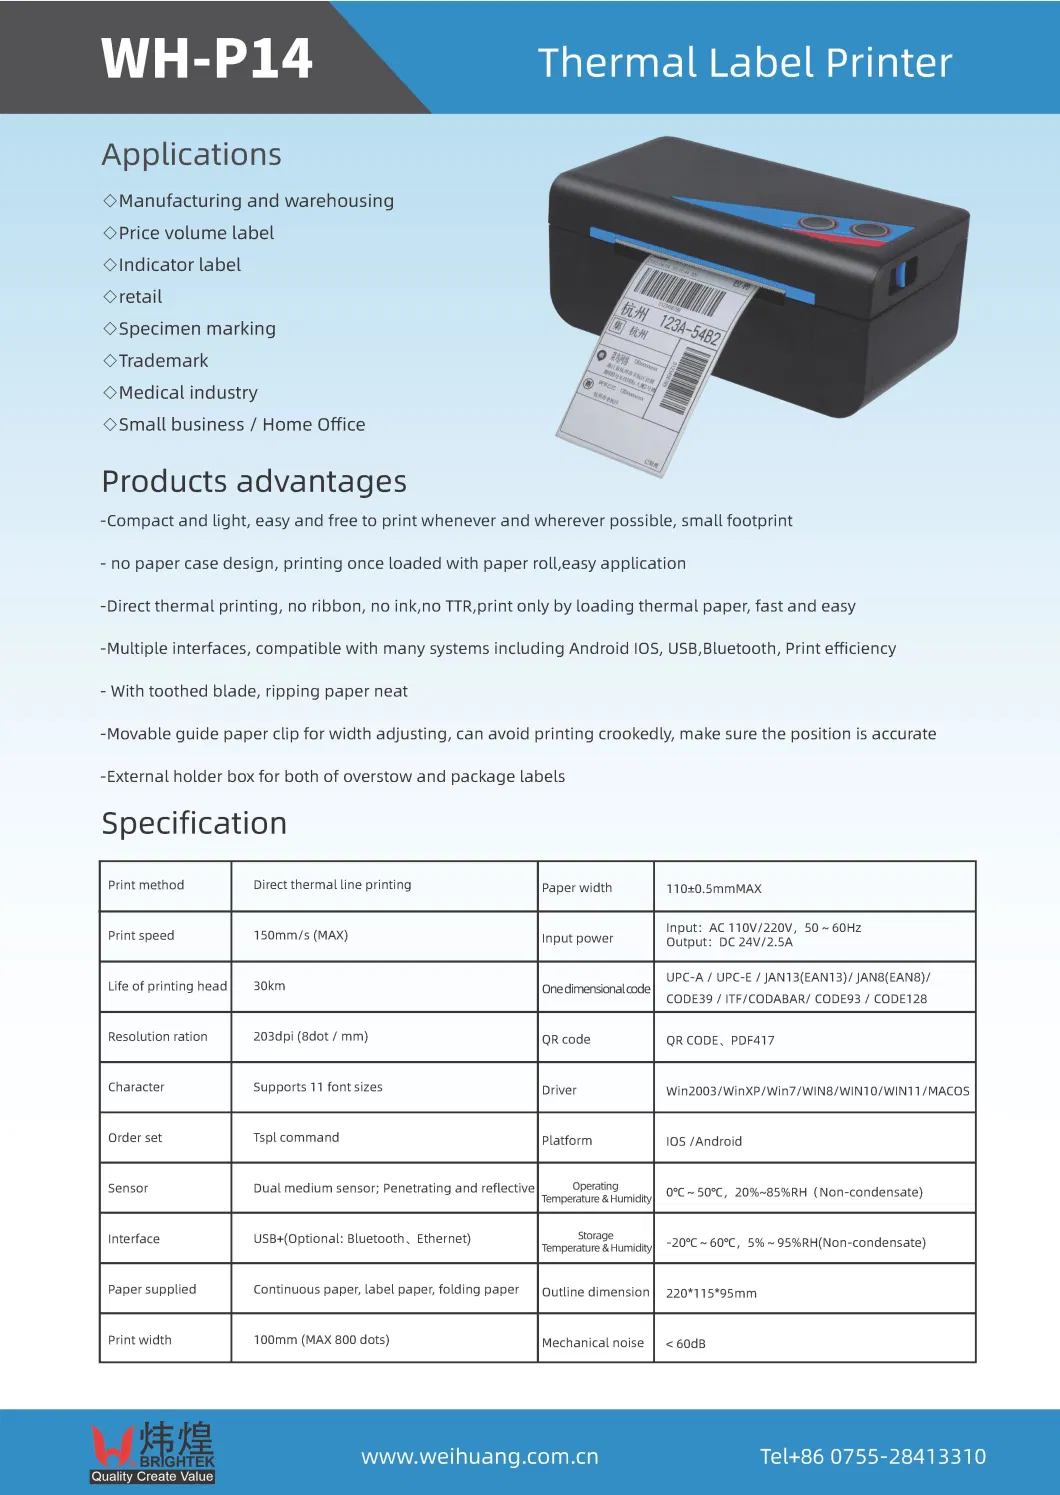 Desktop 110mm Thermal Label Printer with USB Serial LAN Bluetooth